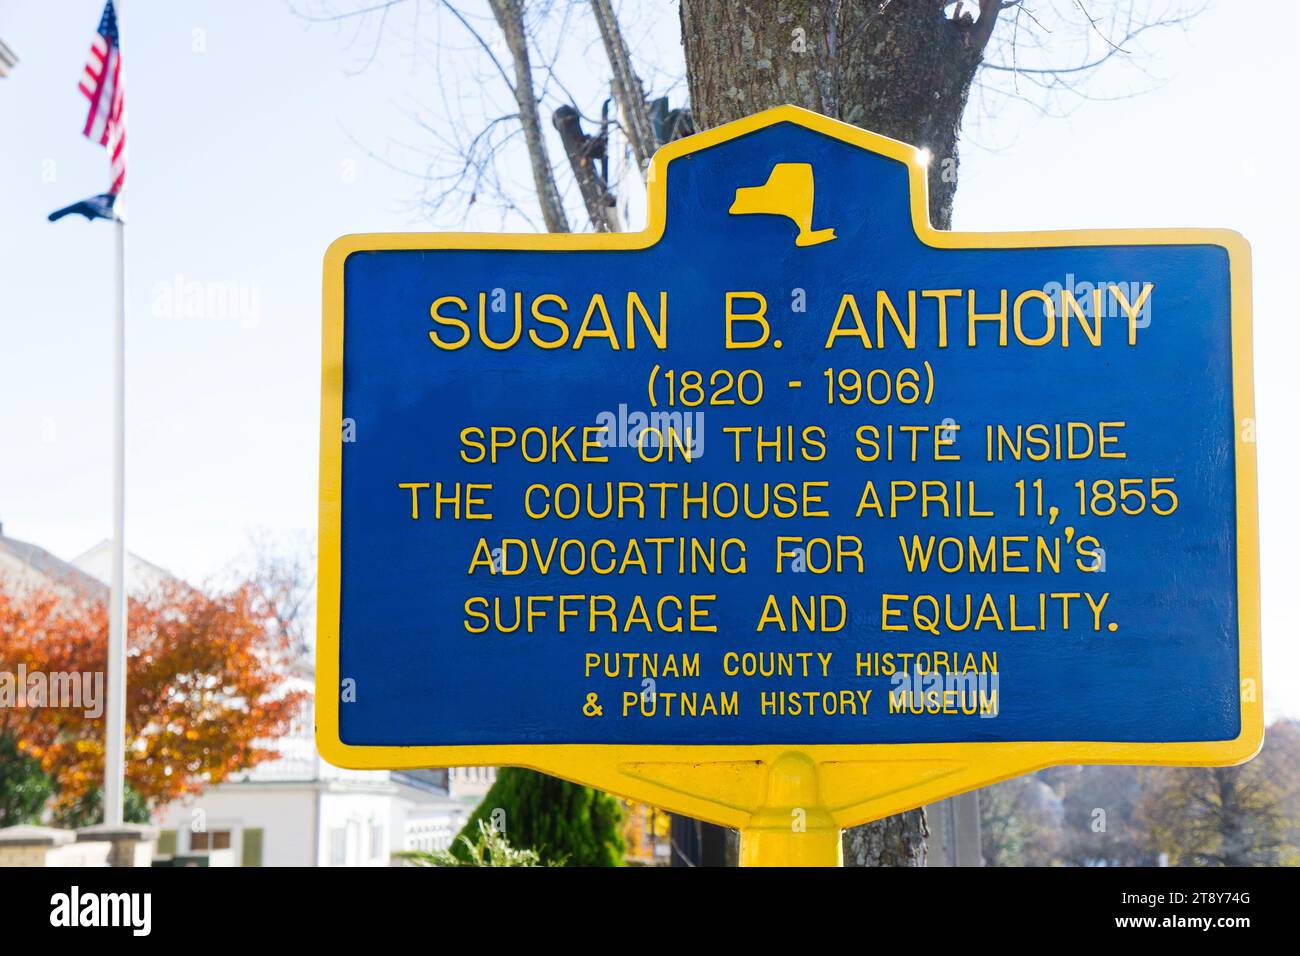 Ein Schild in Carmel, New York, zu Ehren von Susan B. Anthony, die 1855 im Putnam Courthouse über Frauenrechte und Frauenwahlrecht sprach. Stockfoto